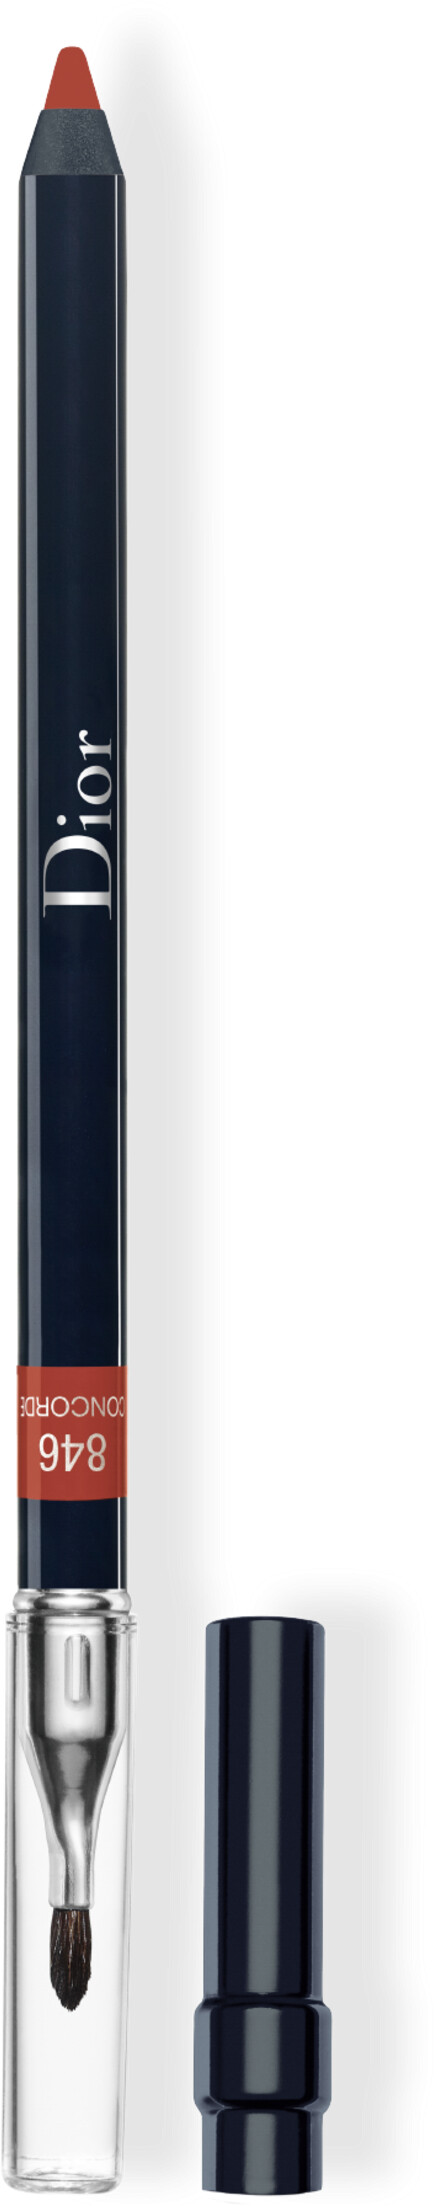 DIOR Rouge Dior Contour Lip Liner Pencil 1.2g 846 - Concorde